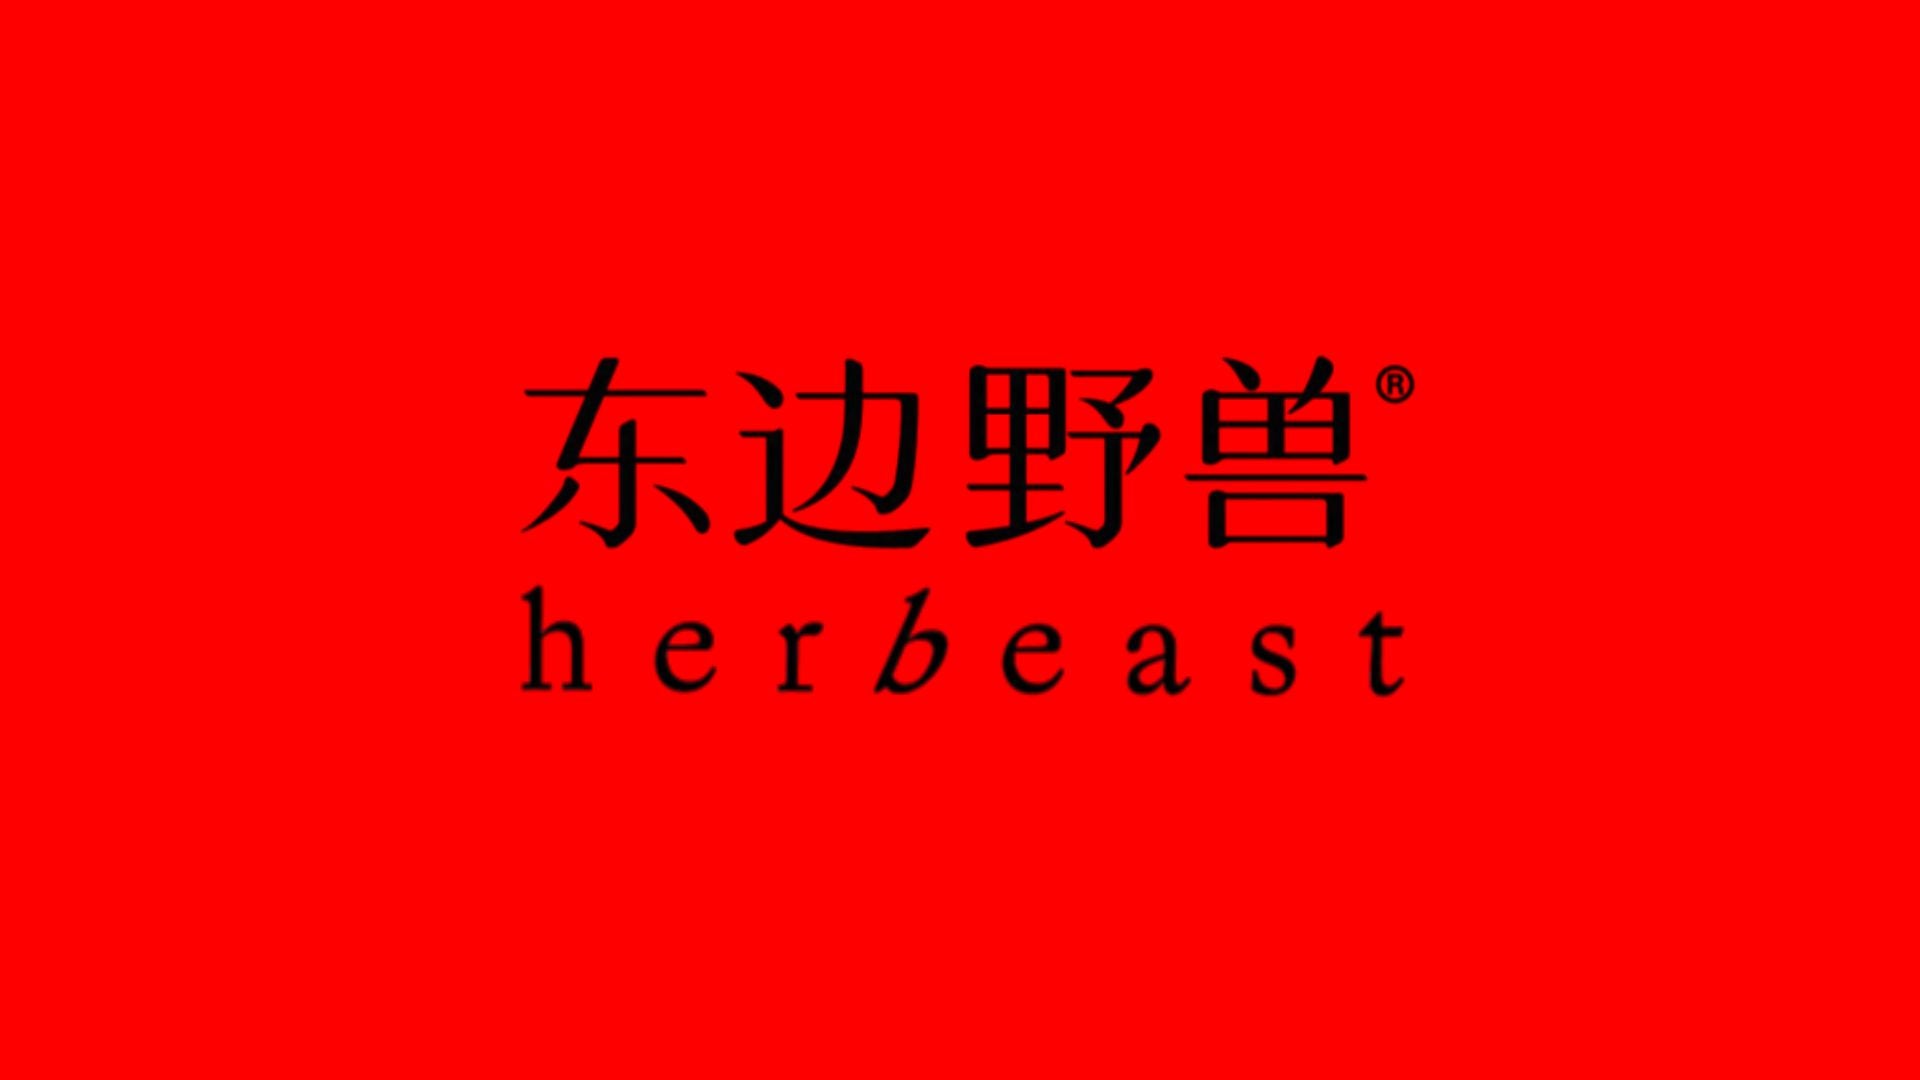 "herbeast日本初のライブコマース実施記念企画"